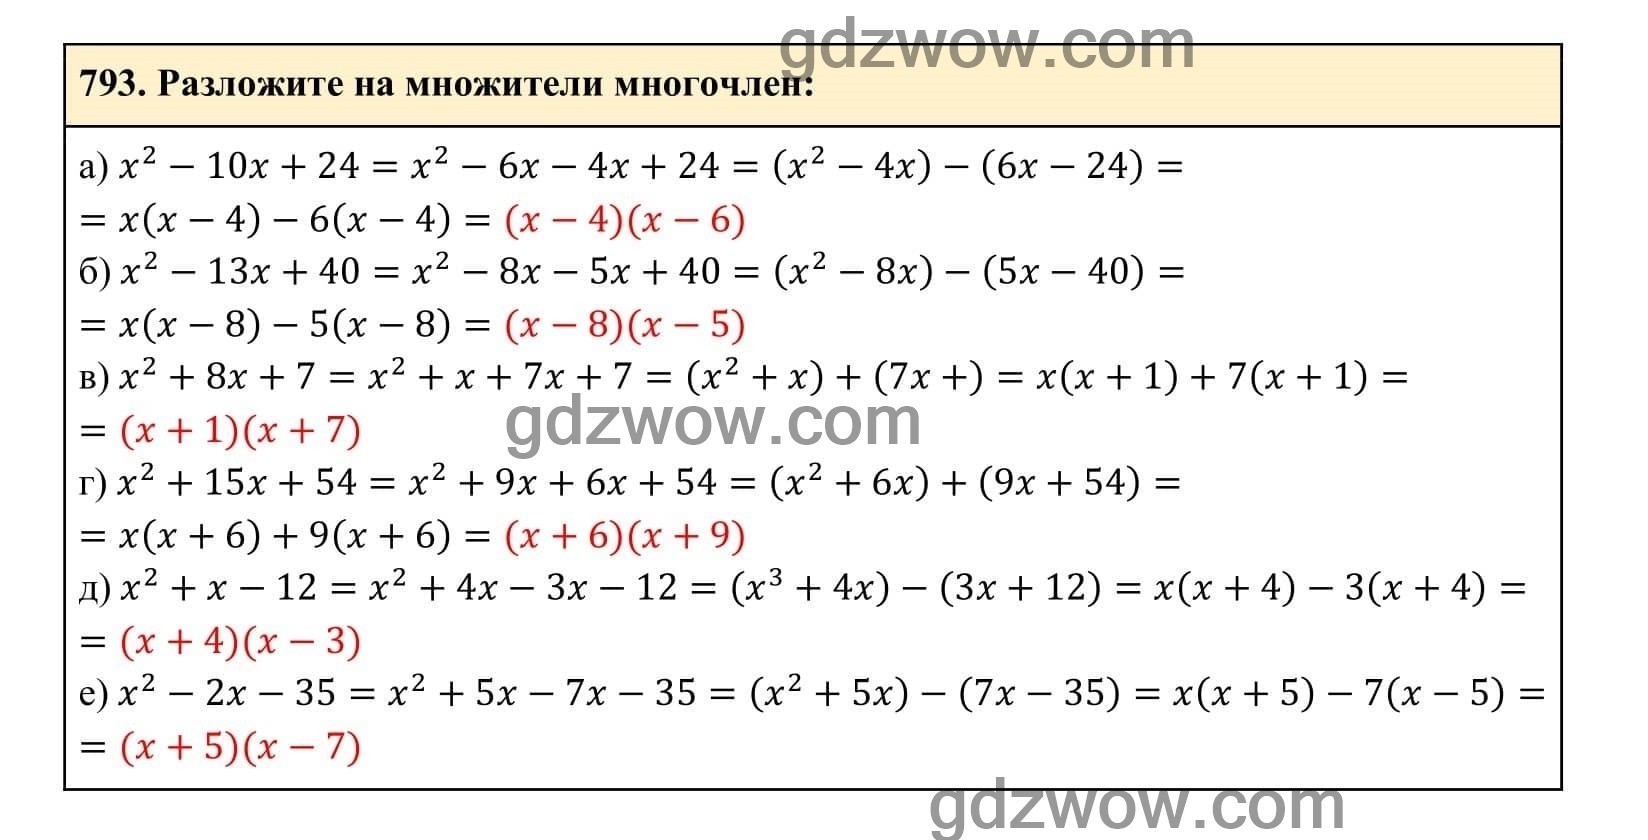 Упражнение 793 - ГДЗ по Алгебре 7 класс Учебник Макарычев (решебник) - GDZwow